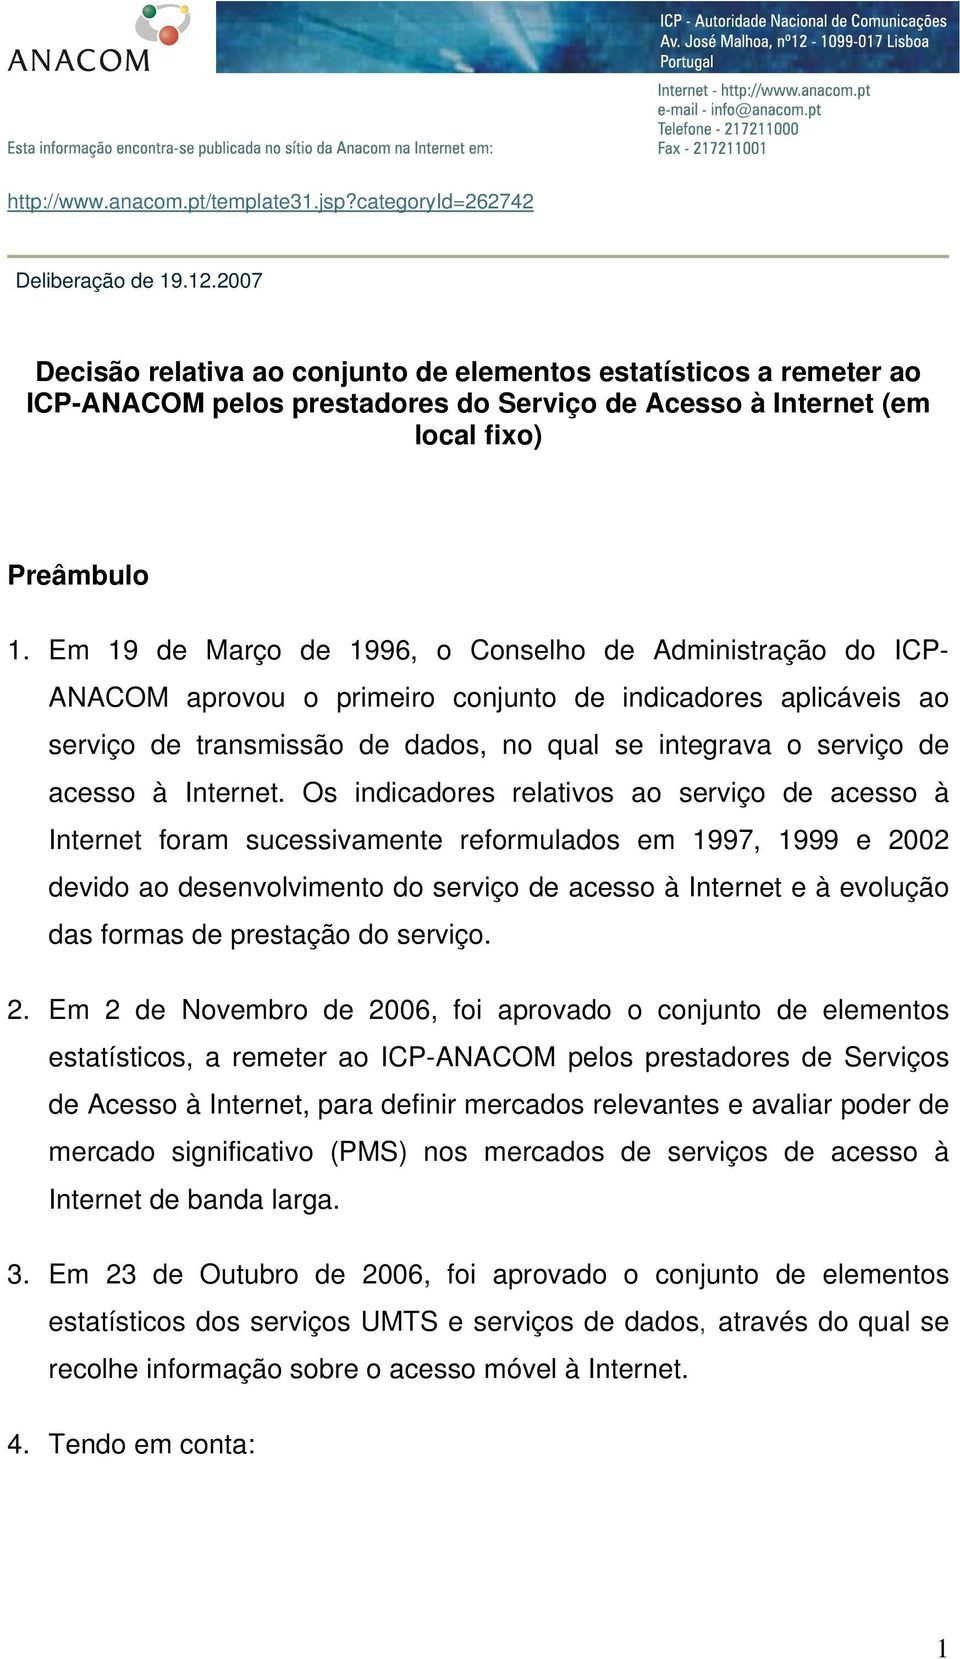 Em 19 de Março de 1996, o Conselho de Administração do ICP- ANACOM aprovou o primeiro conjunto de indicadores aplicáveis ao serviço de transmissão de dados, no qual se integrava o serviço de acesso à